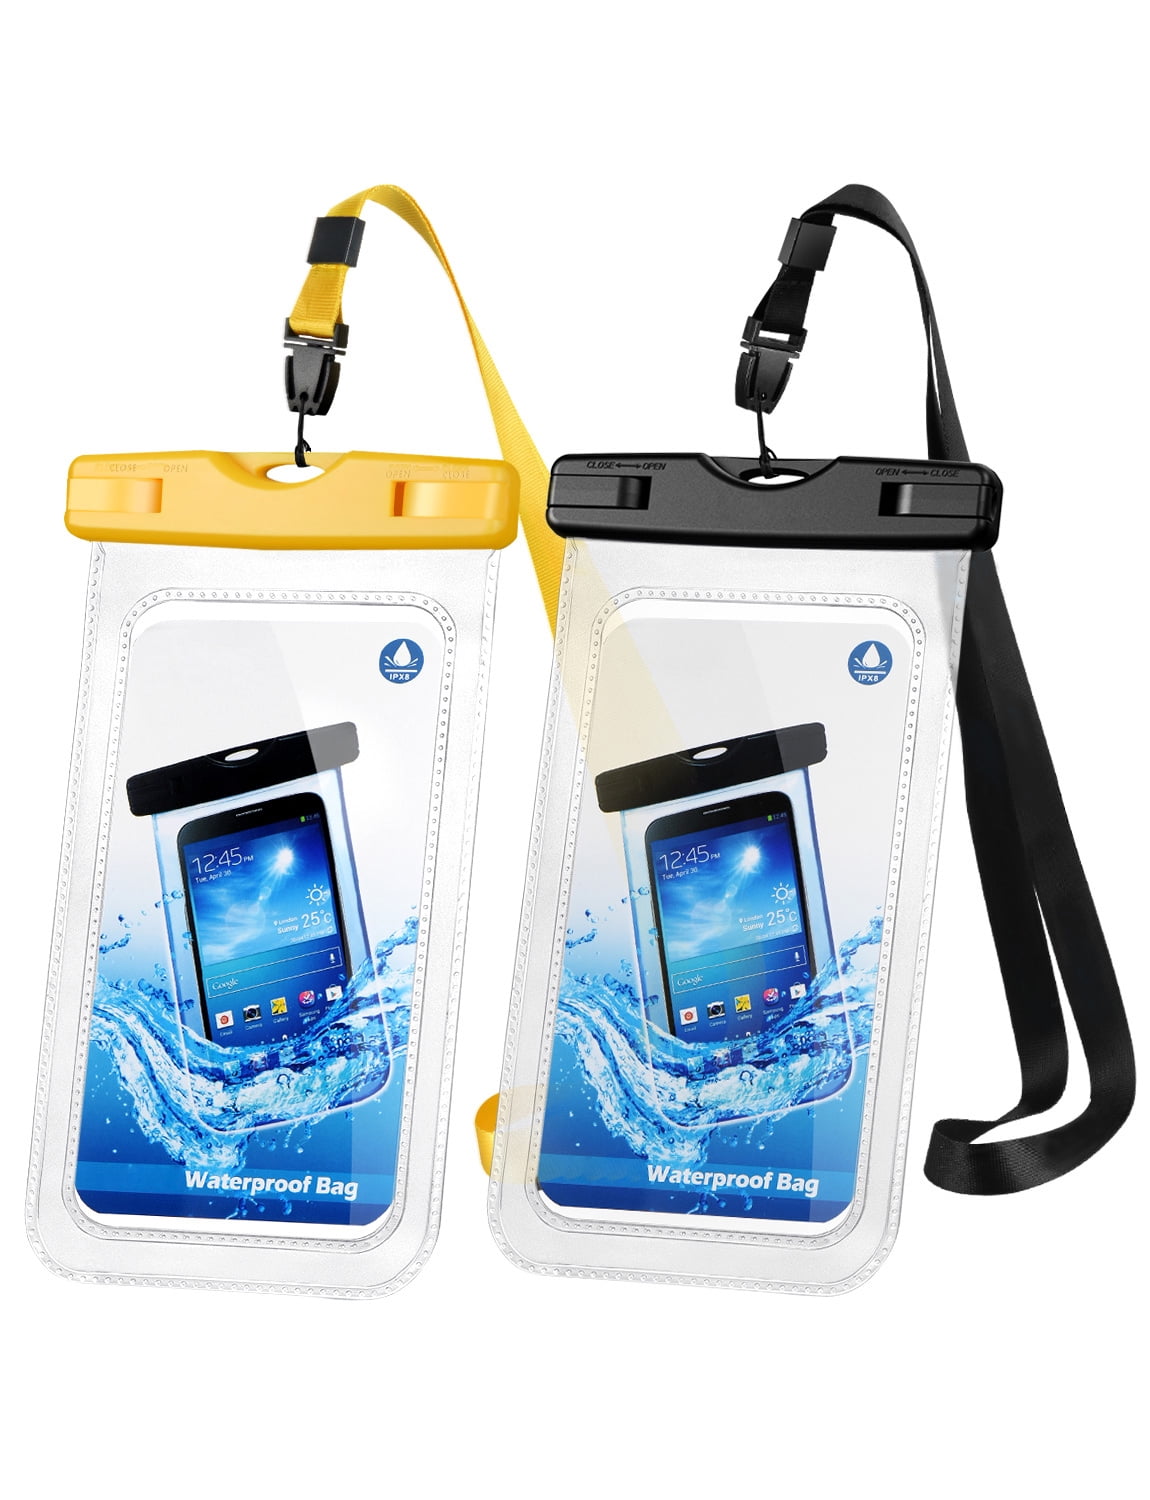 merknaam van nu af aan Beweegt niet Mpow Universal Waterproof Case, IPX8 Waterproof Phone Pouch Dry Bag for  iPhone8/7/7plus/6s/6/6s plus Samsung galaxy s8/s7 LG V20 Google Pixel HTC10  (Clear 2-Pack) - Walmart.com